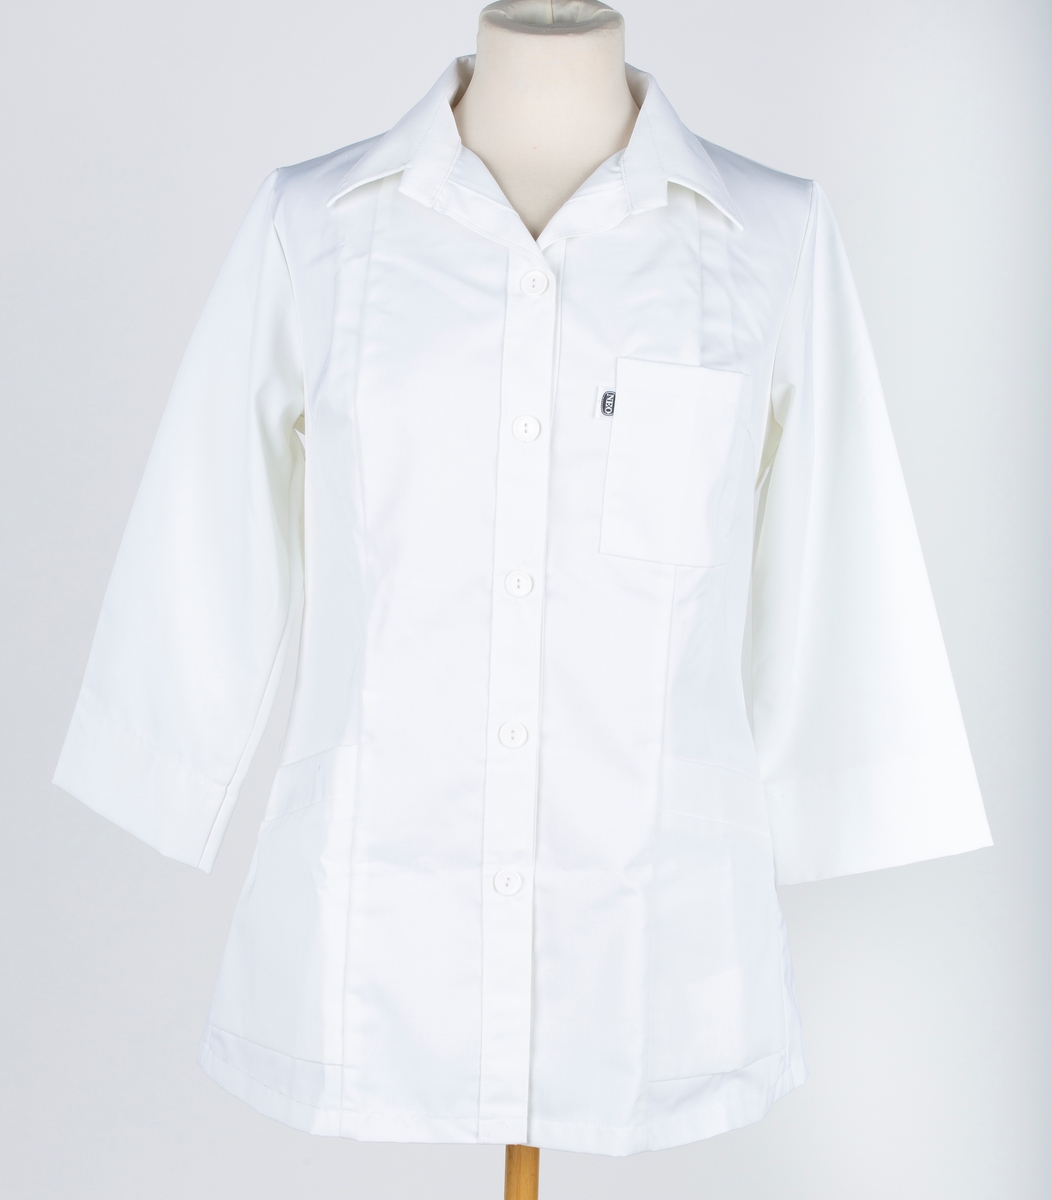 Skjorte, 7 bredder, med slag, 3 lommer, lange ermer, 3/4 lang.
Neo yrkesklær. Sannsynligvis laboratoriefrakk.